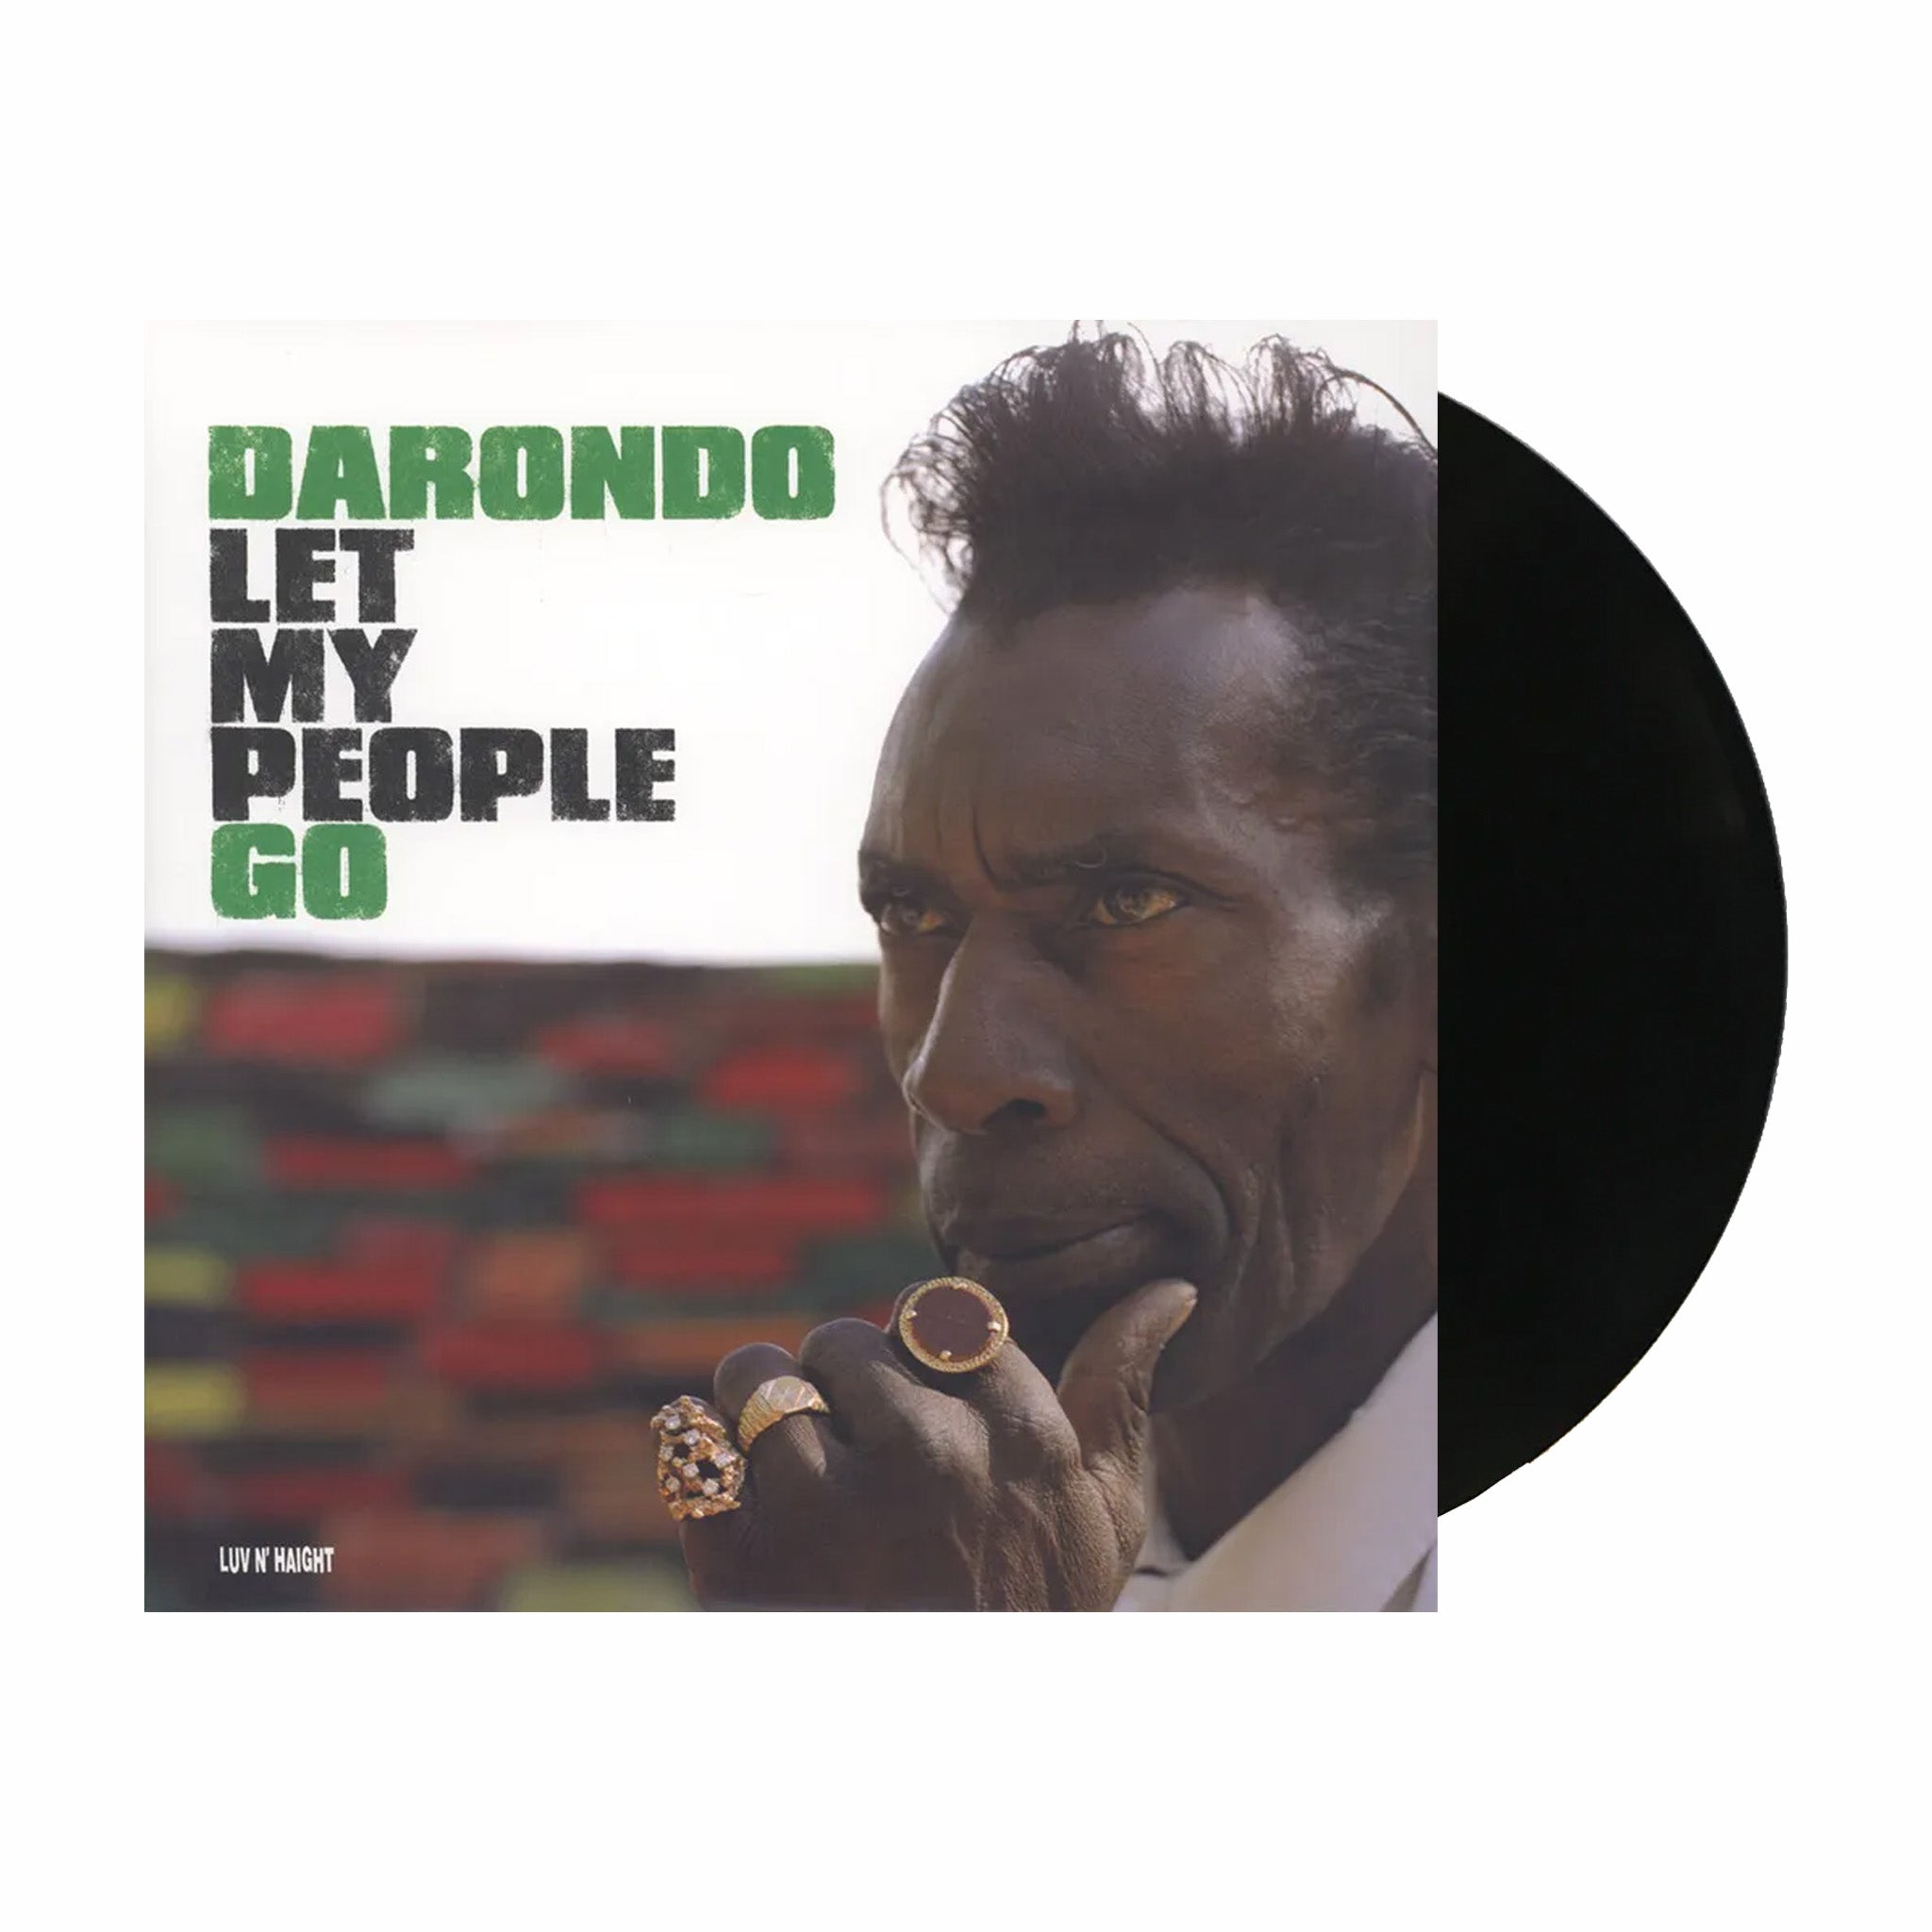 In vinile, Darondo "Let My People Go" (ristampa in vinile 180g) LP